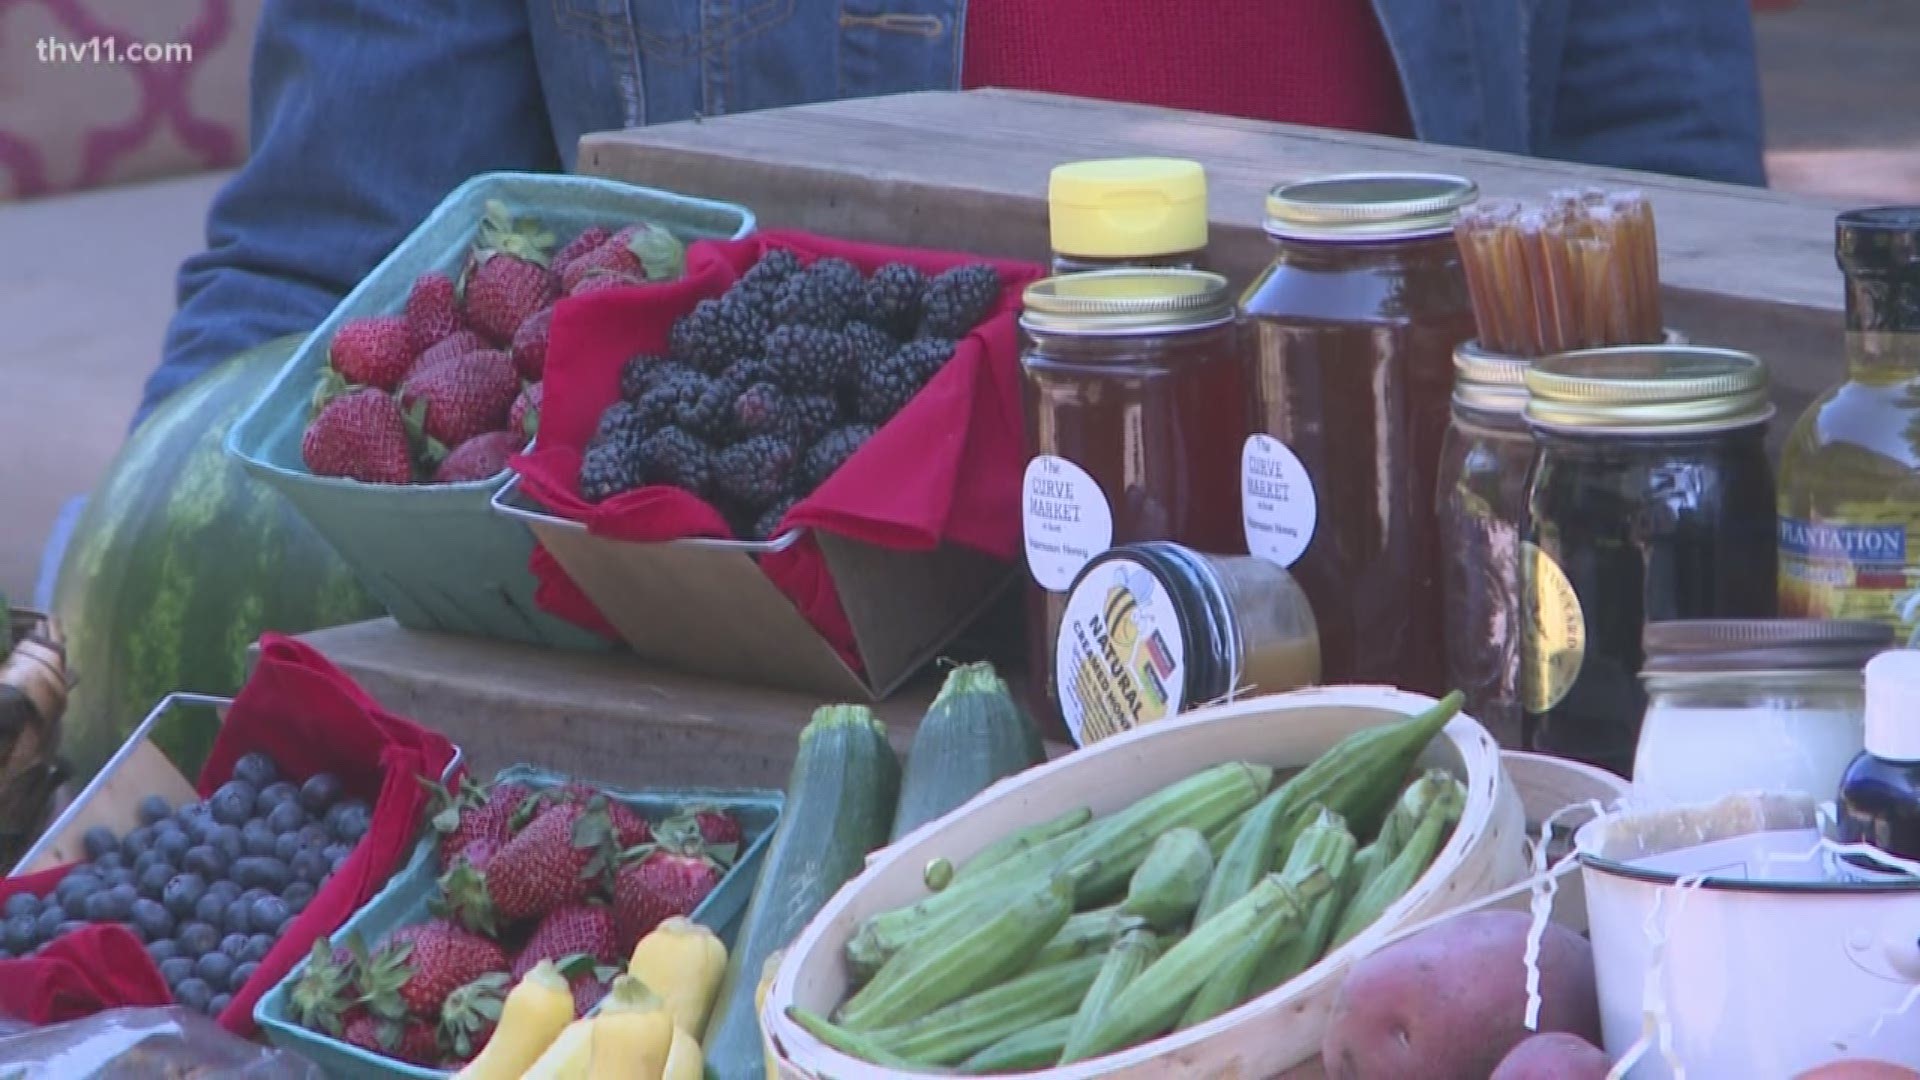 The Little Rock Farmers' Market runs through September in downtown Little Rock.